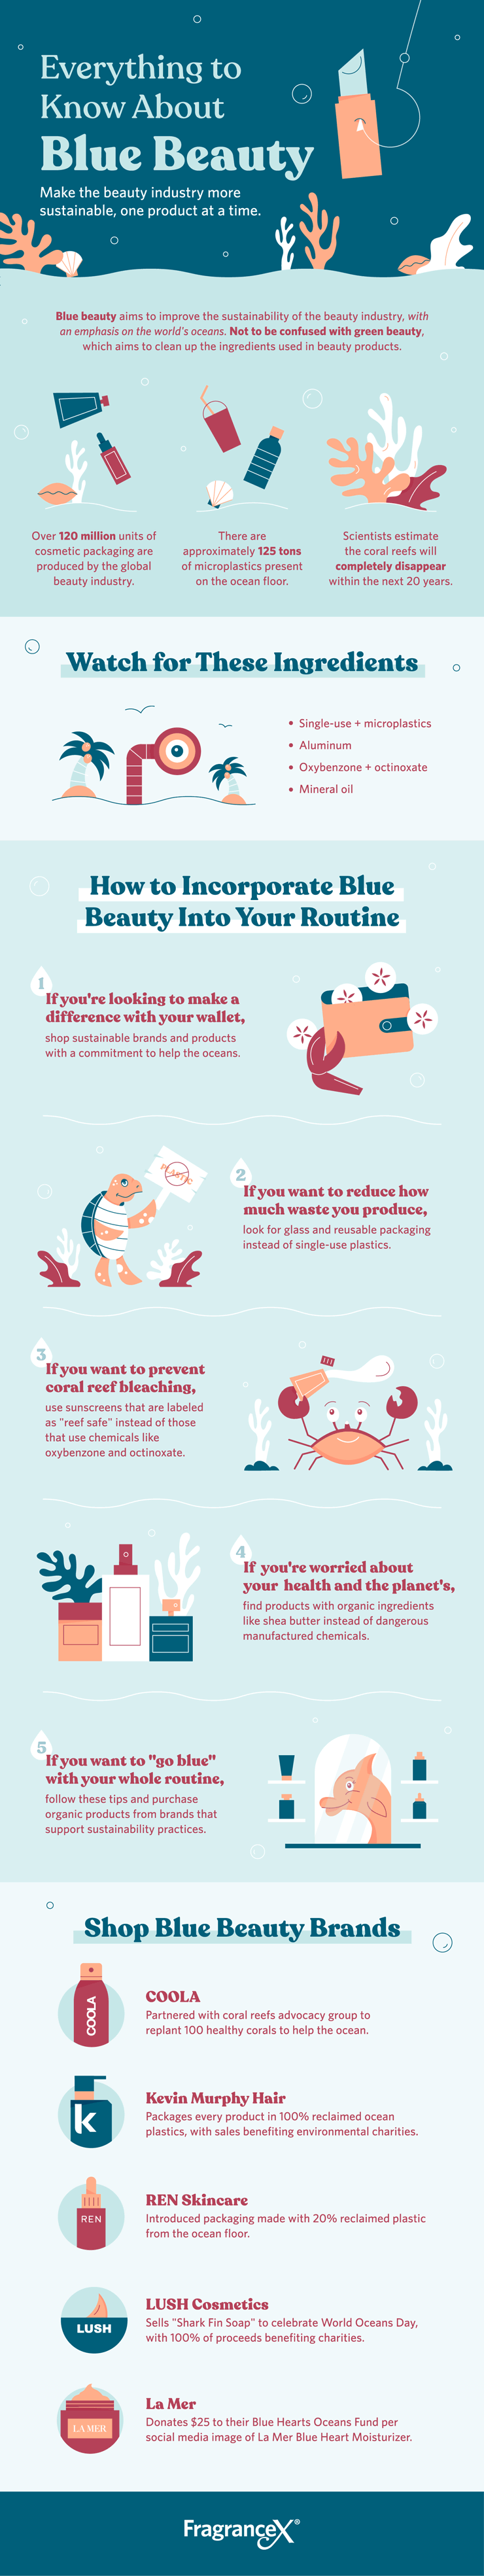 ocean-friendly beauty routine